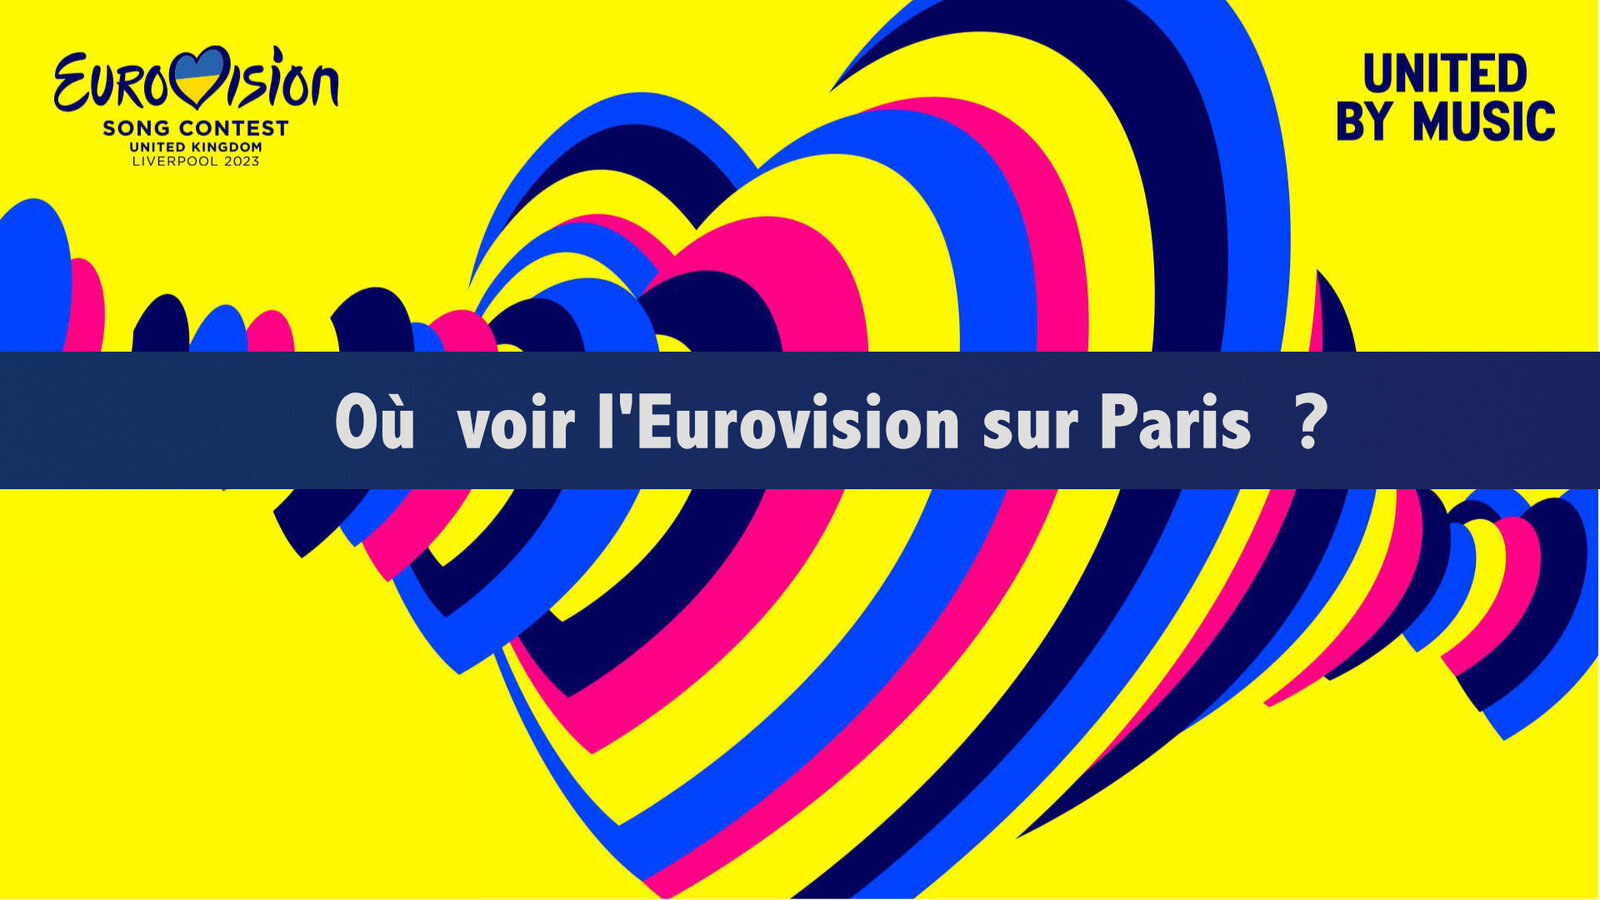 Les soirées gay pour regarder l'Eurovision 2023 à Paris